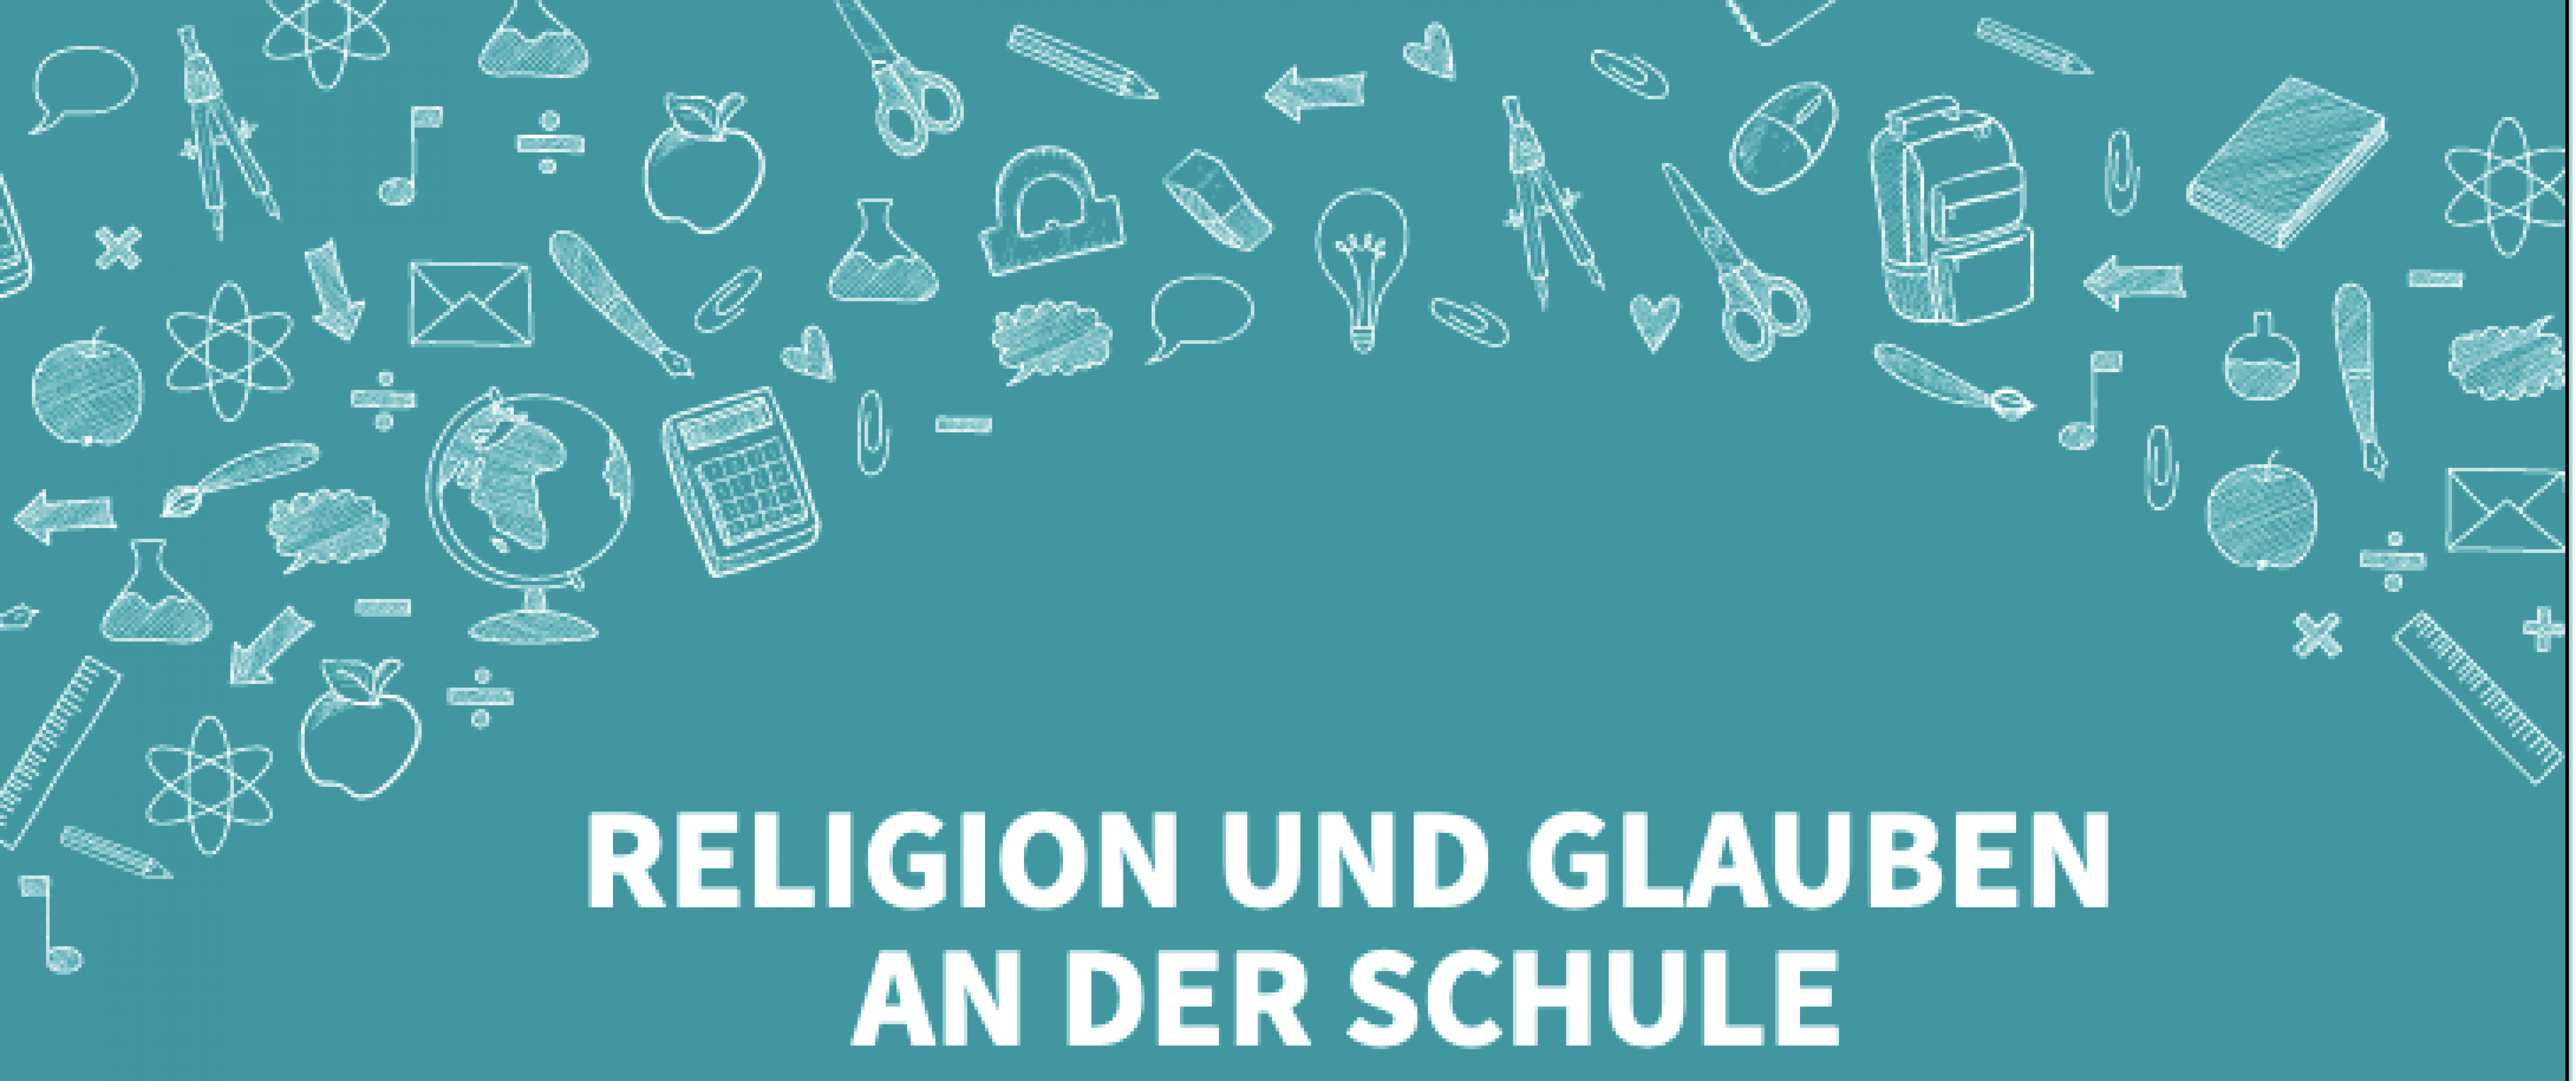 Logo zu der Studie "Religion und Glauben an der Schule" von ADAS